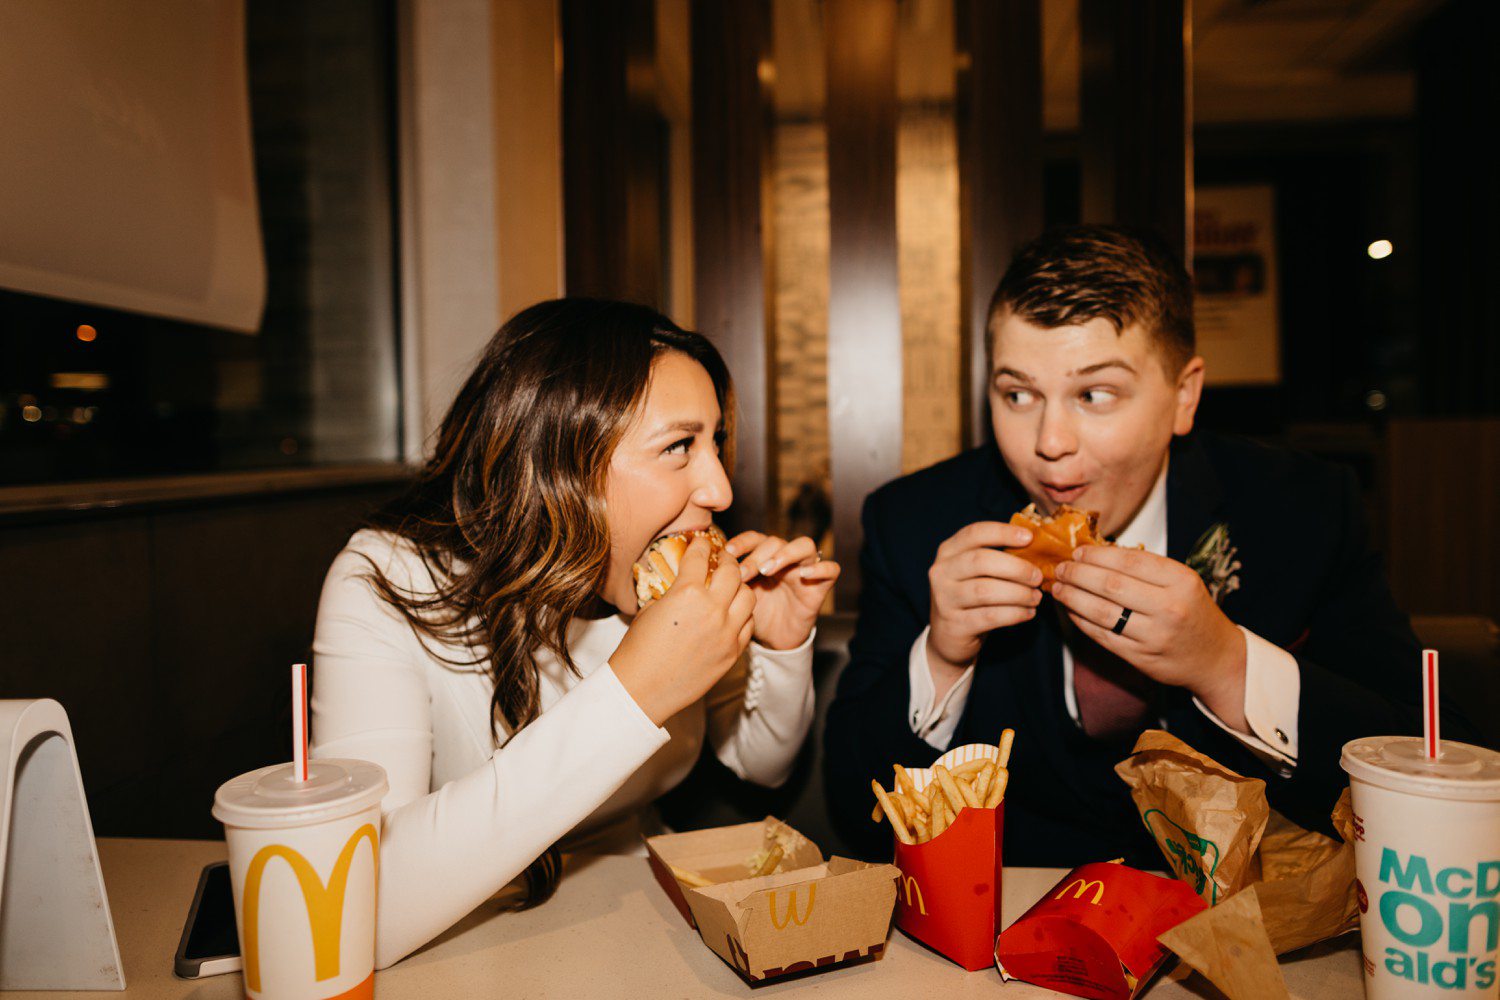 Wedding Photos at McDonalds